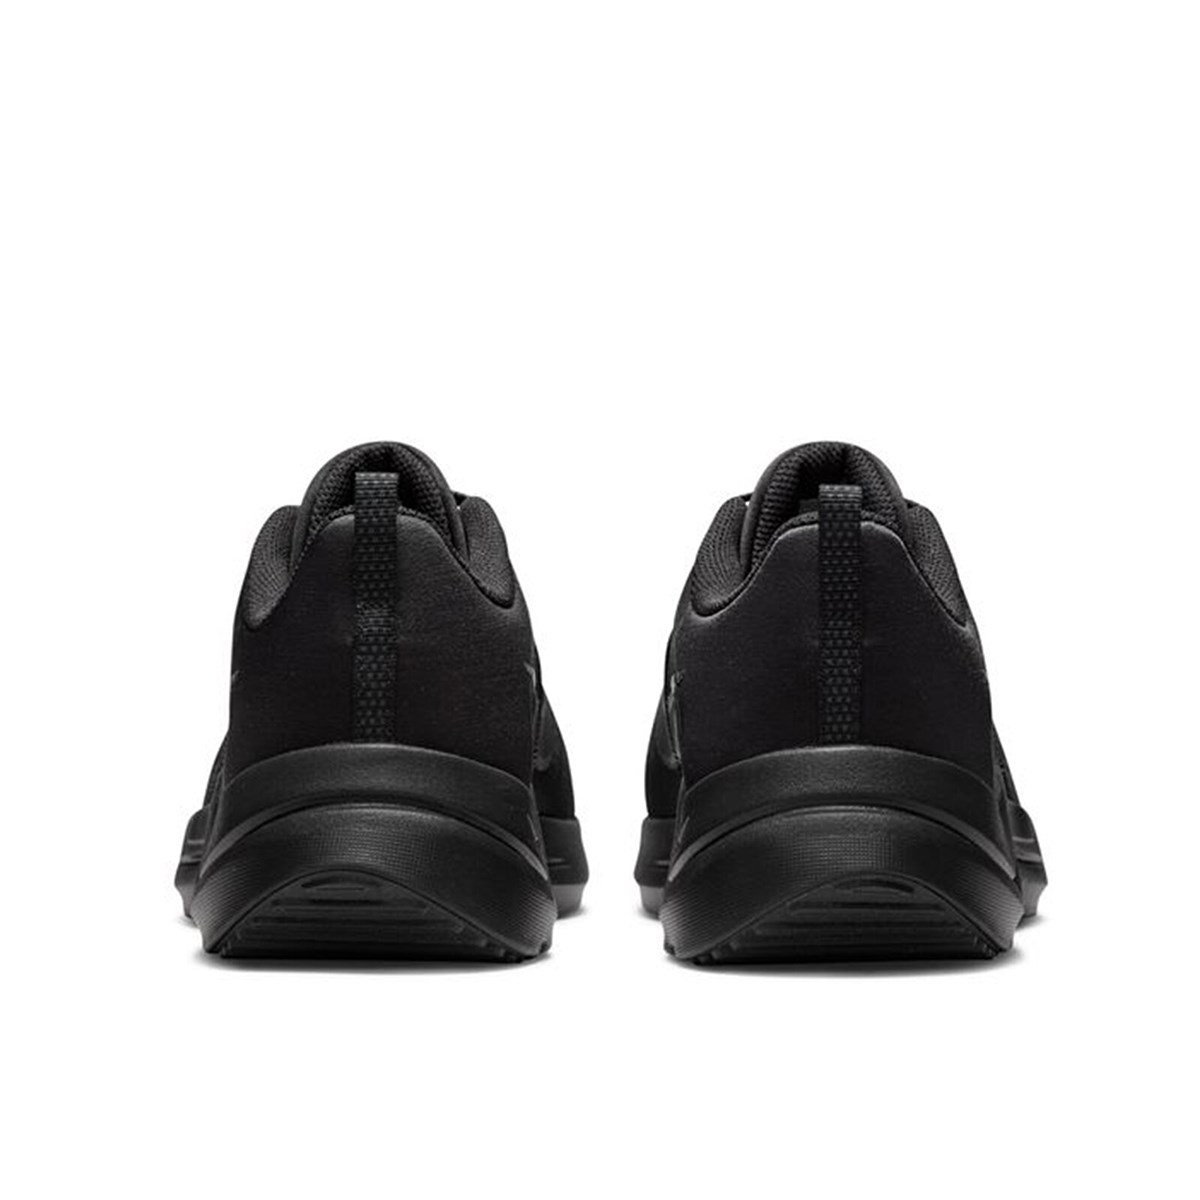 Nike Downshifter 12  Erkek Günlük Spor Ayakkabı Black - Dk Smoke Grey - Particle Grey